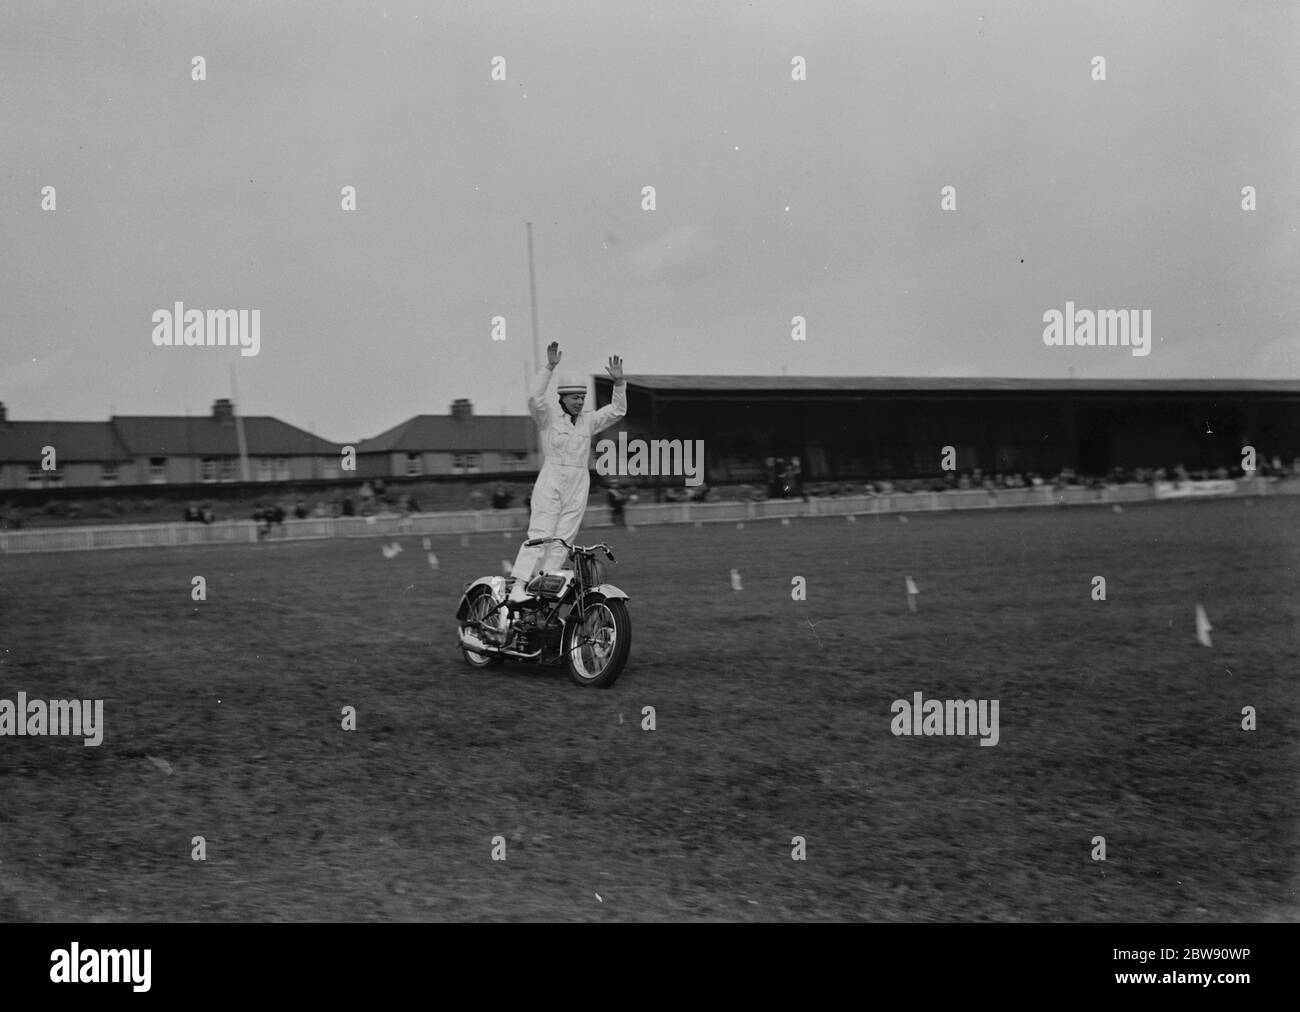 Il ciclo motoristico Gravesend e District Gymkhana nel Kent . Il campione del mondo Jim Hayhurst esegue acrobazie sulla sua moto davanti agli spettatori . 19 giugno 1939 Foto Stock